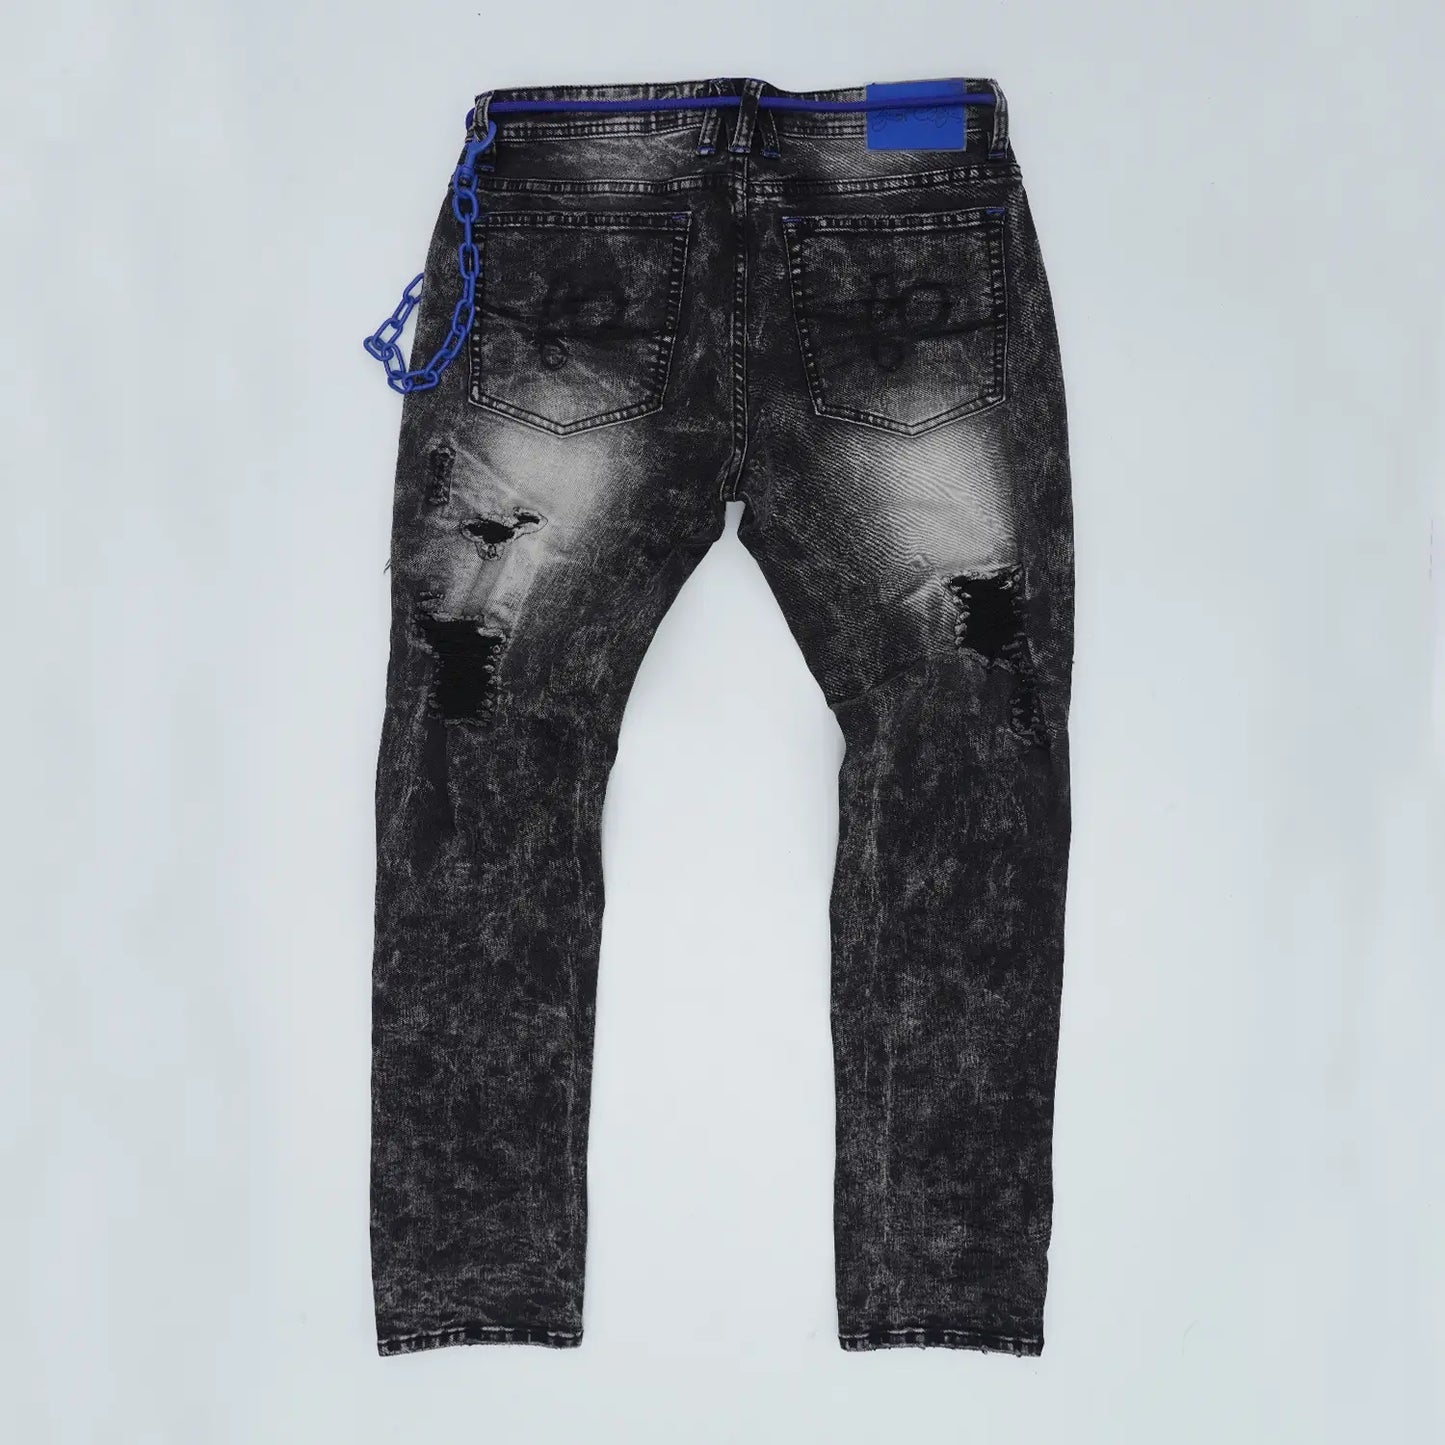 Frost Shredded Jeans - Black Wash / Blue